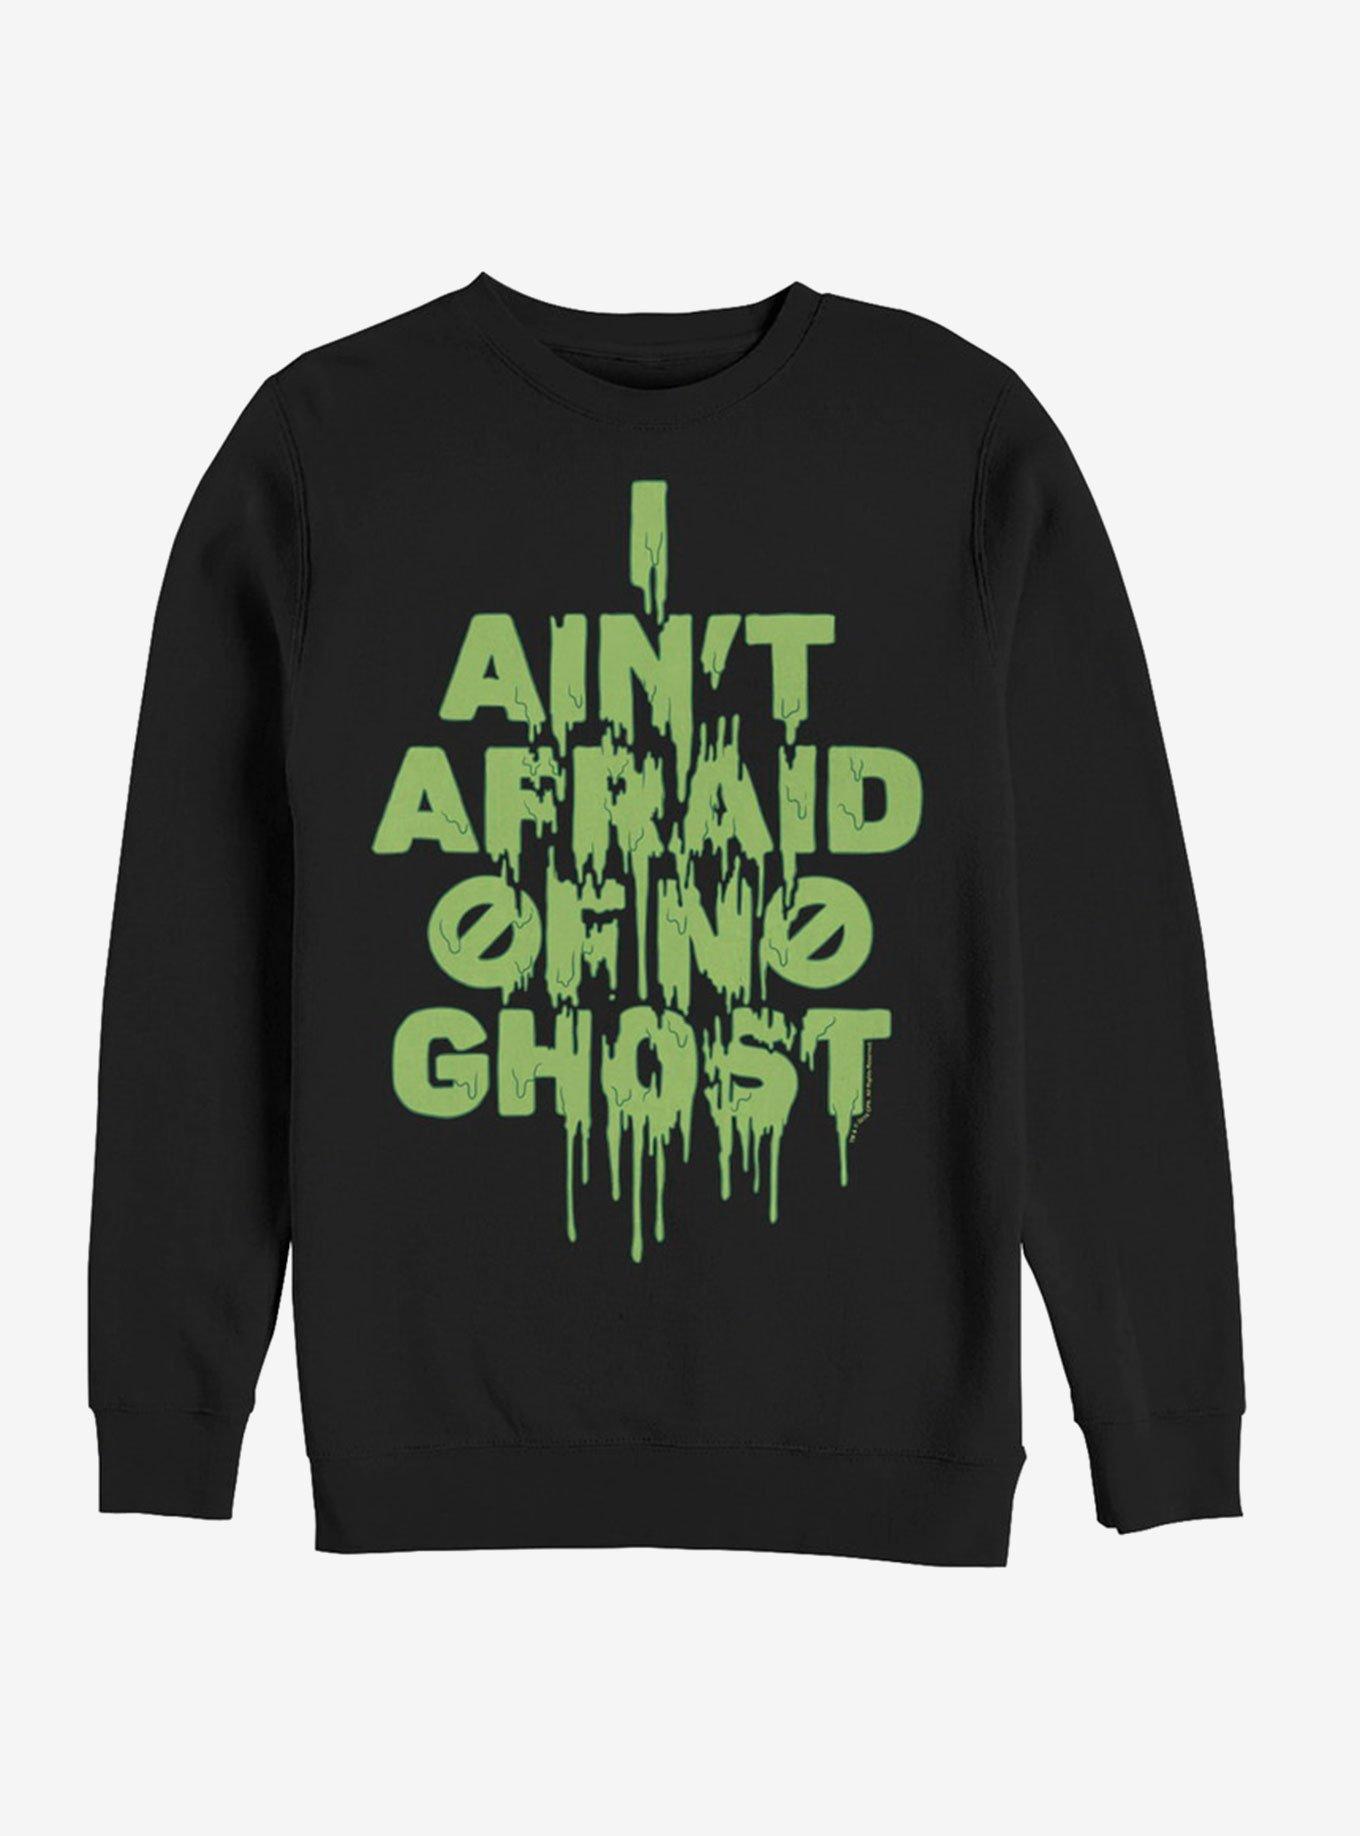 Ghostbusters Ain't Afraid Slime Sweatshirt, BLACK, hi-res